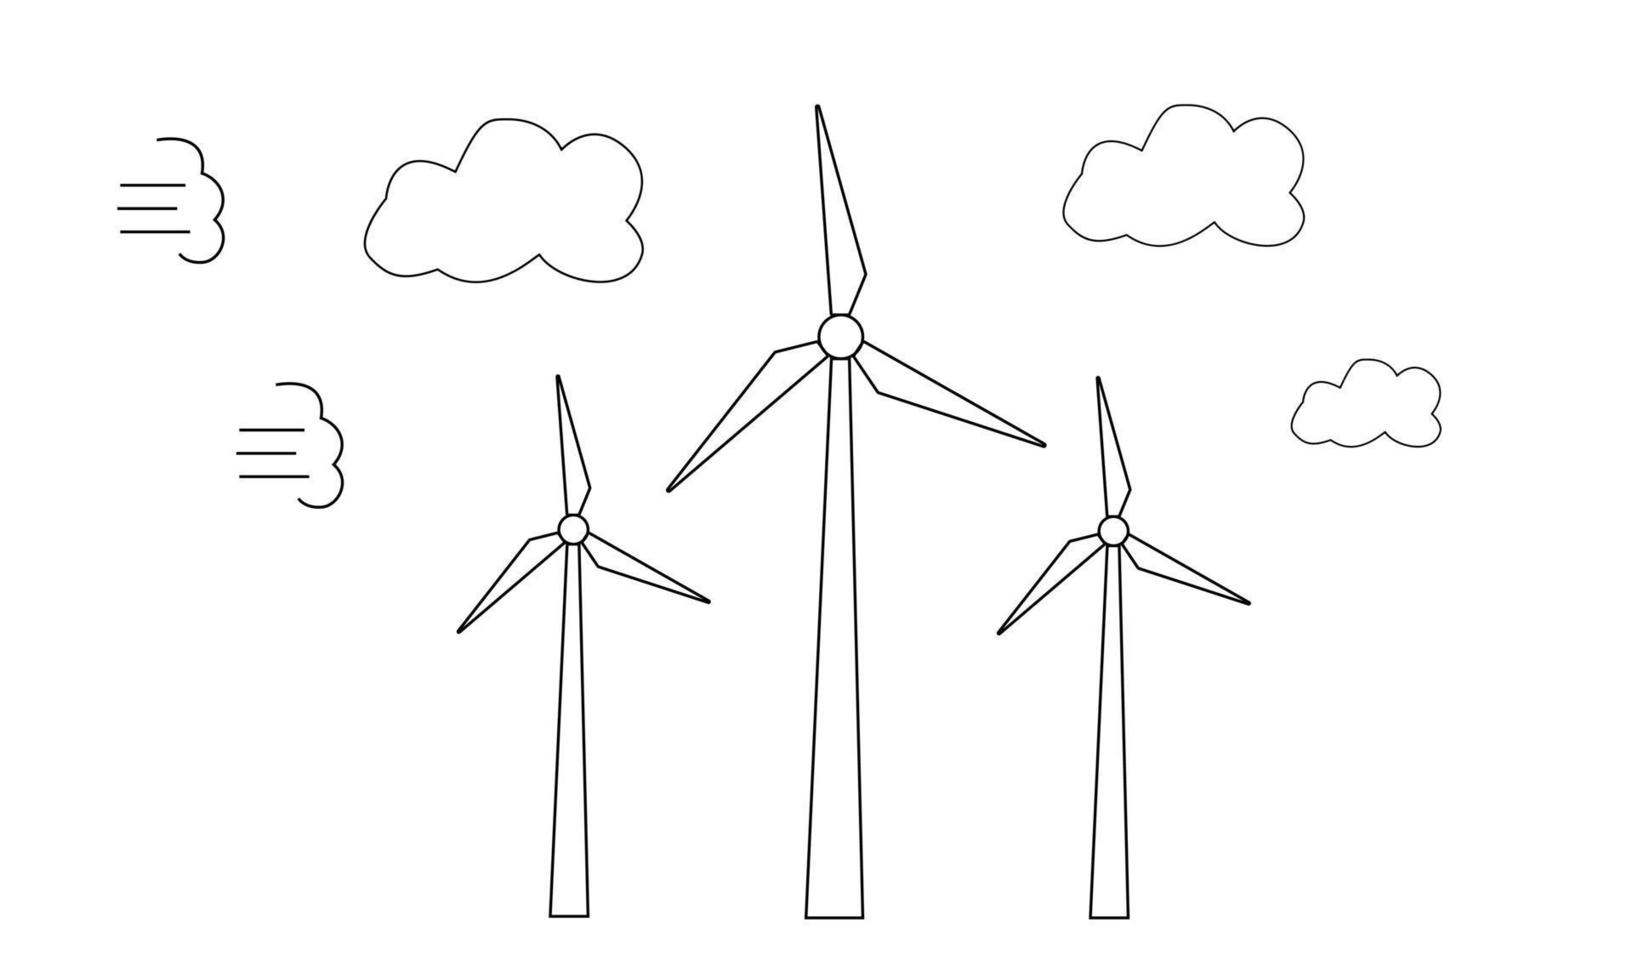 parques eólicos dibujados a mano impulsados por el flujo de aire. uso de energías renovables. cuidando el medio ambiente. estilo de dibujo de fideos. ilustración vectorial vector